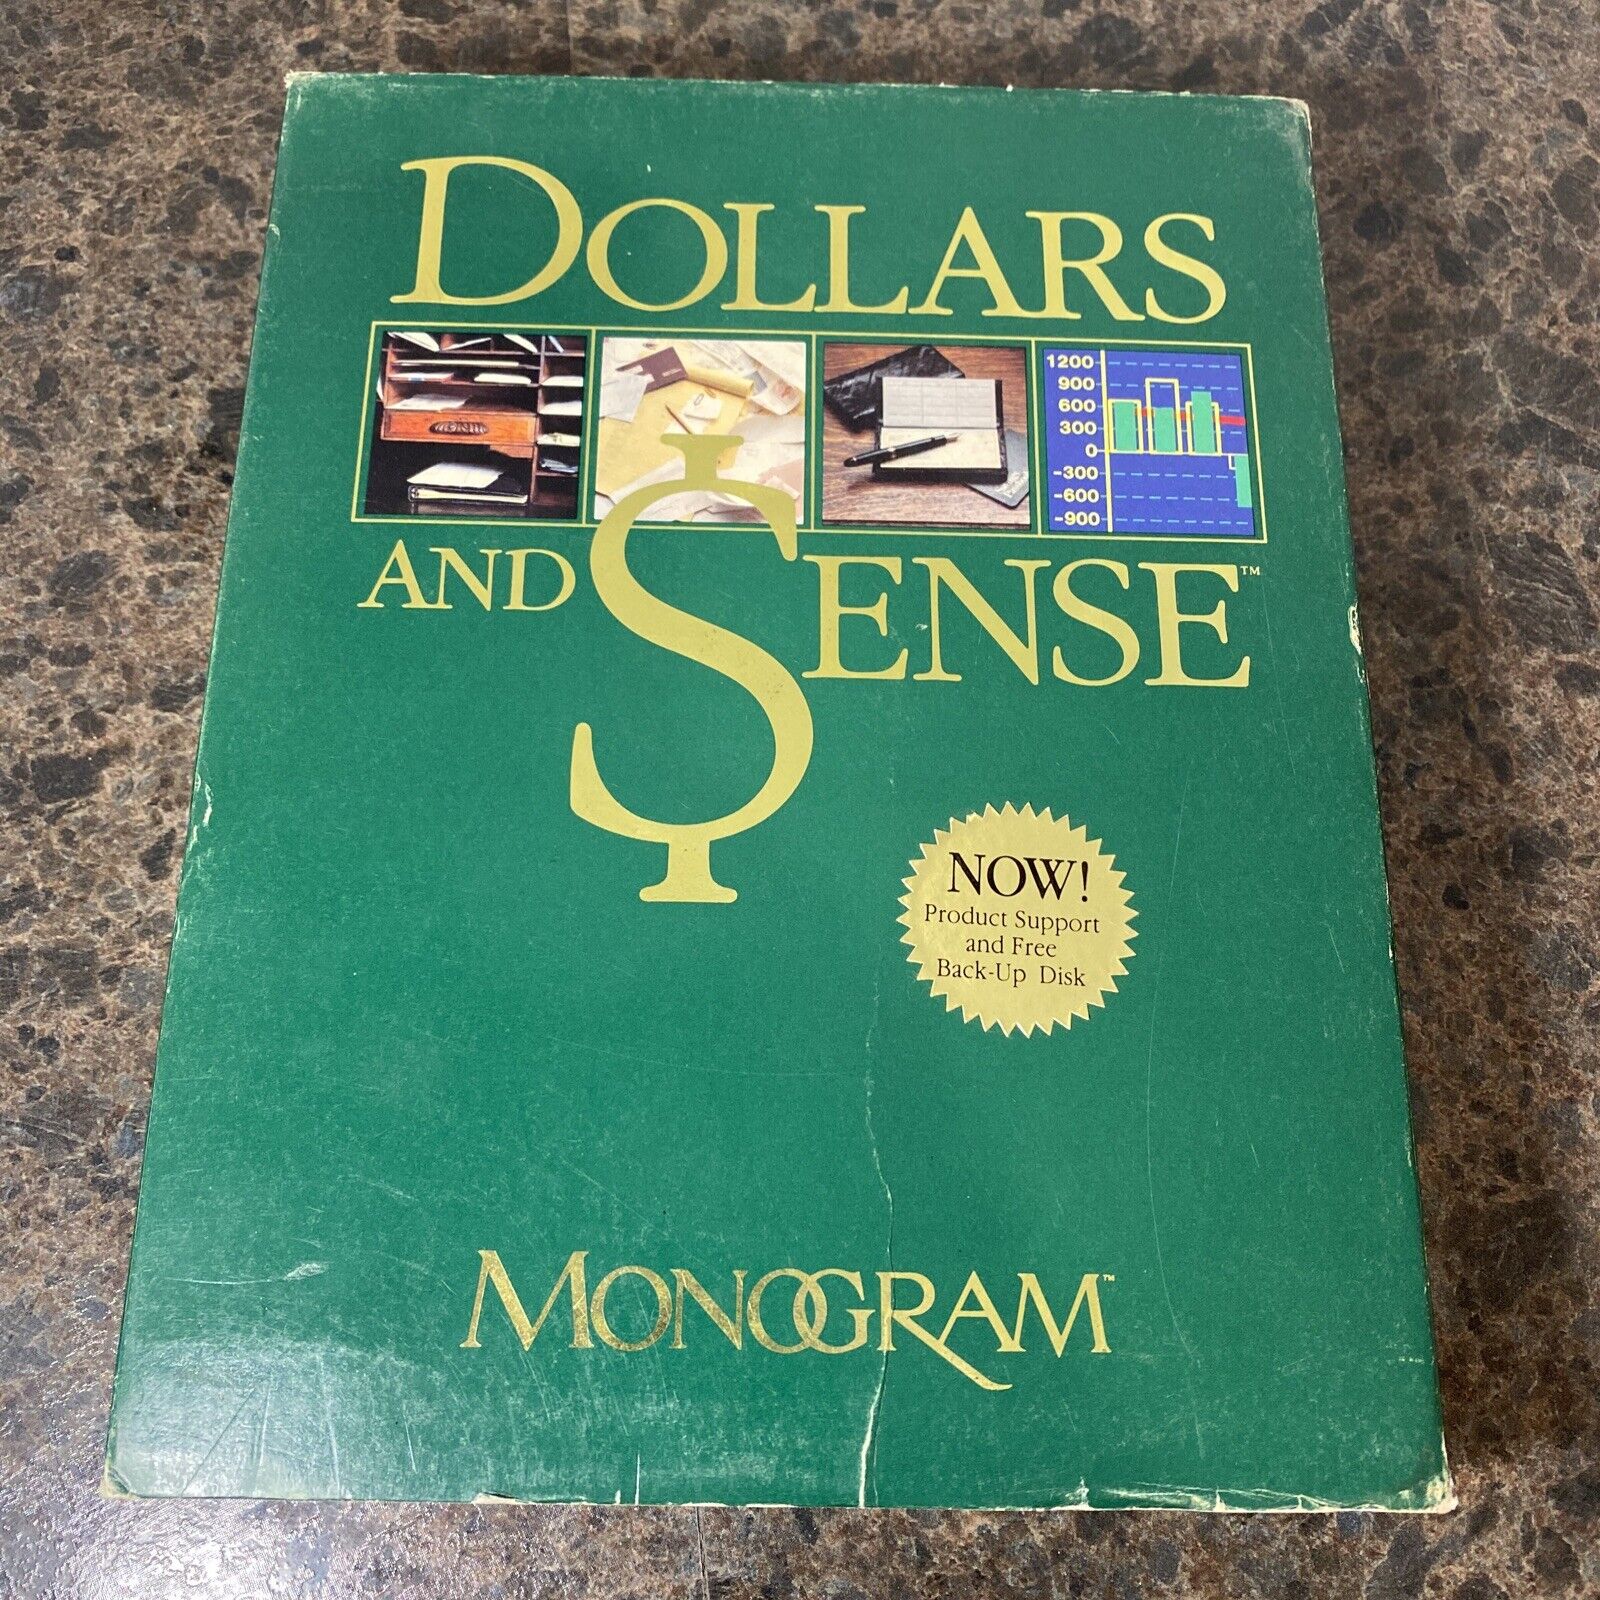 Dollars and $ense by Monogram Apple II 5.25\